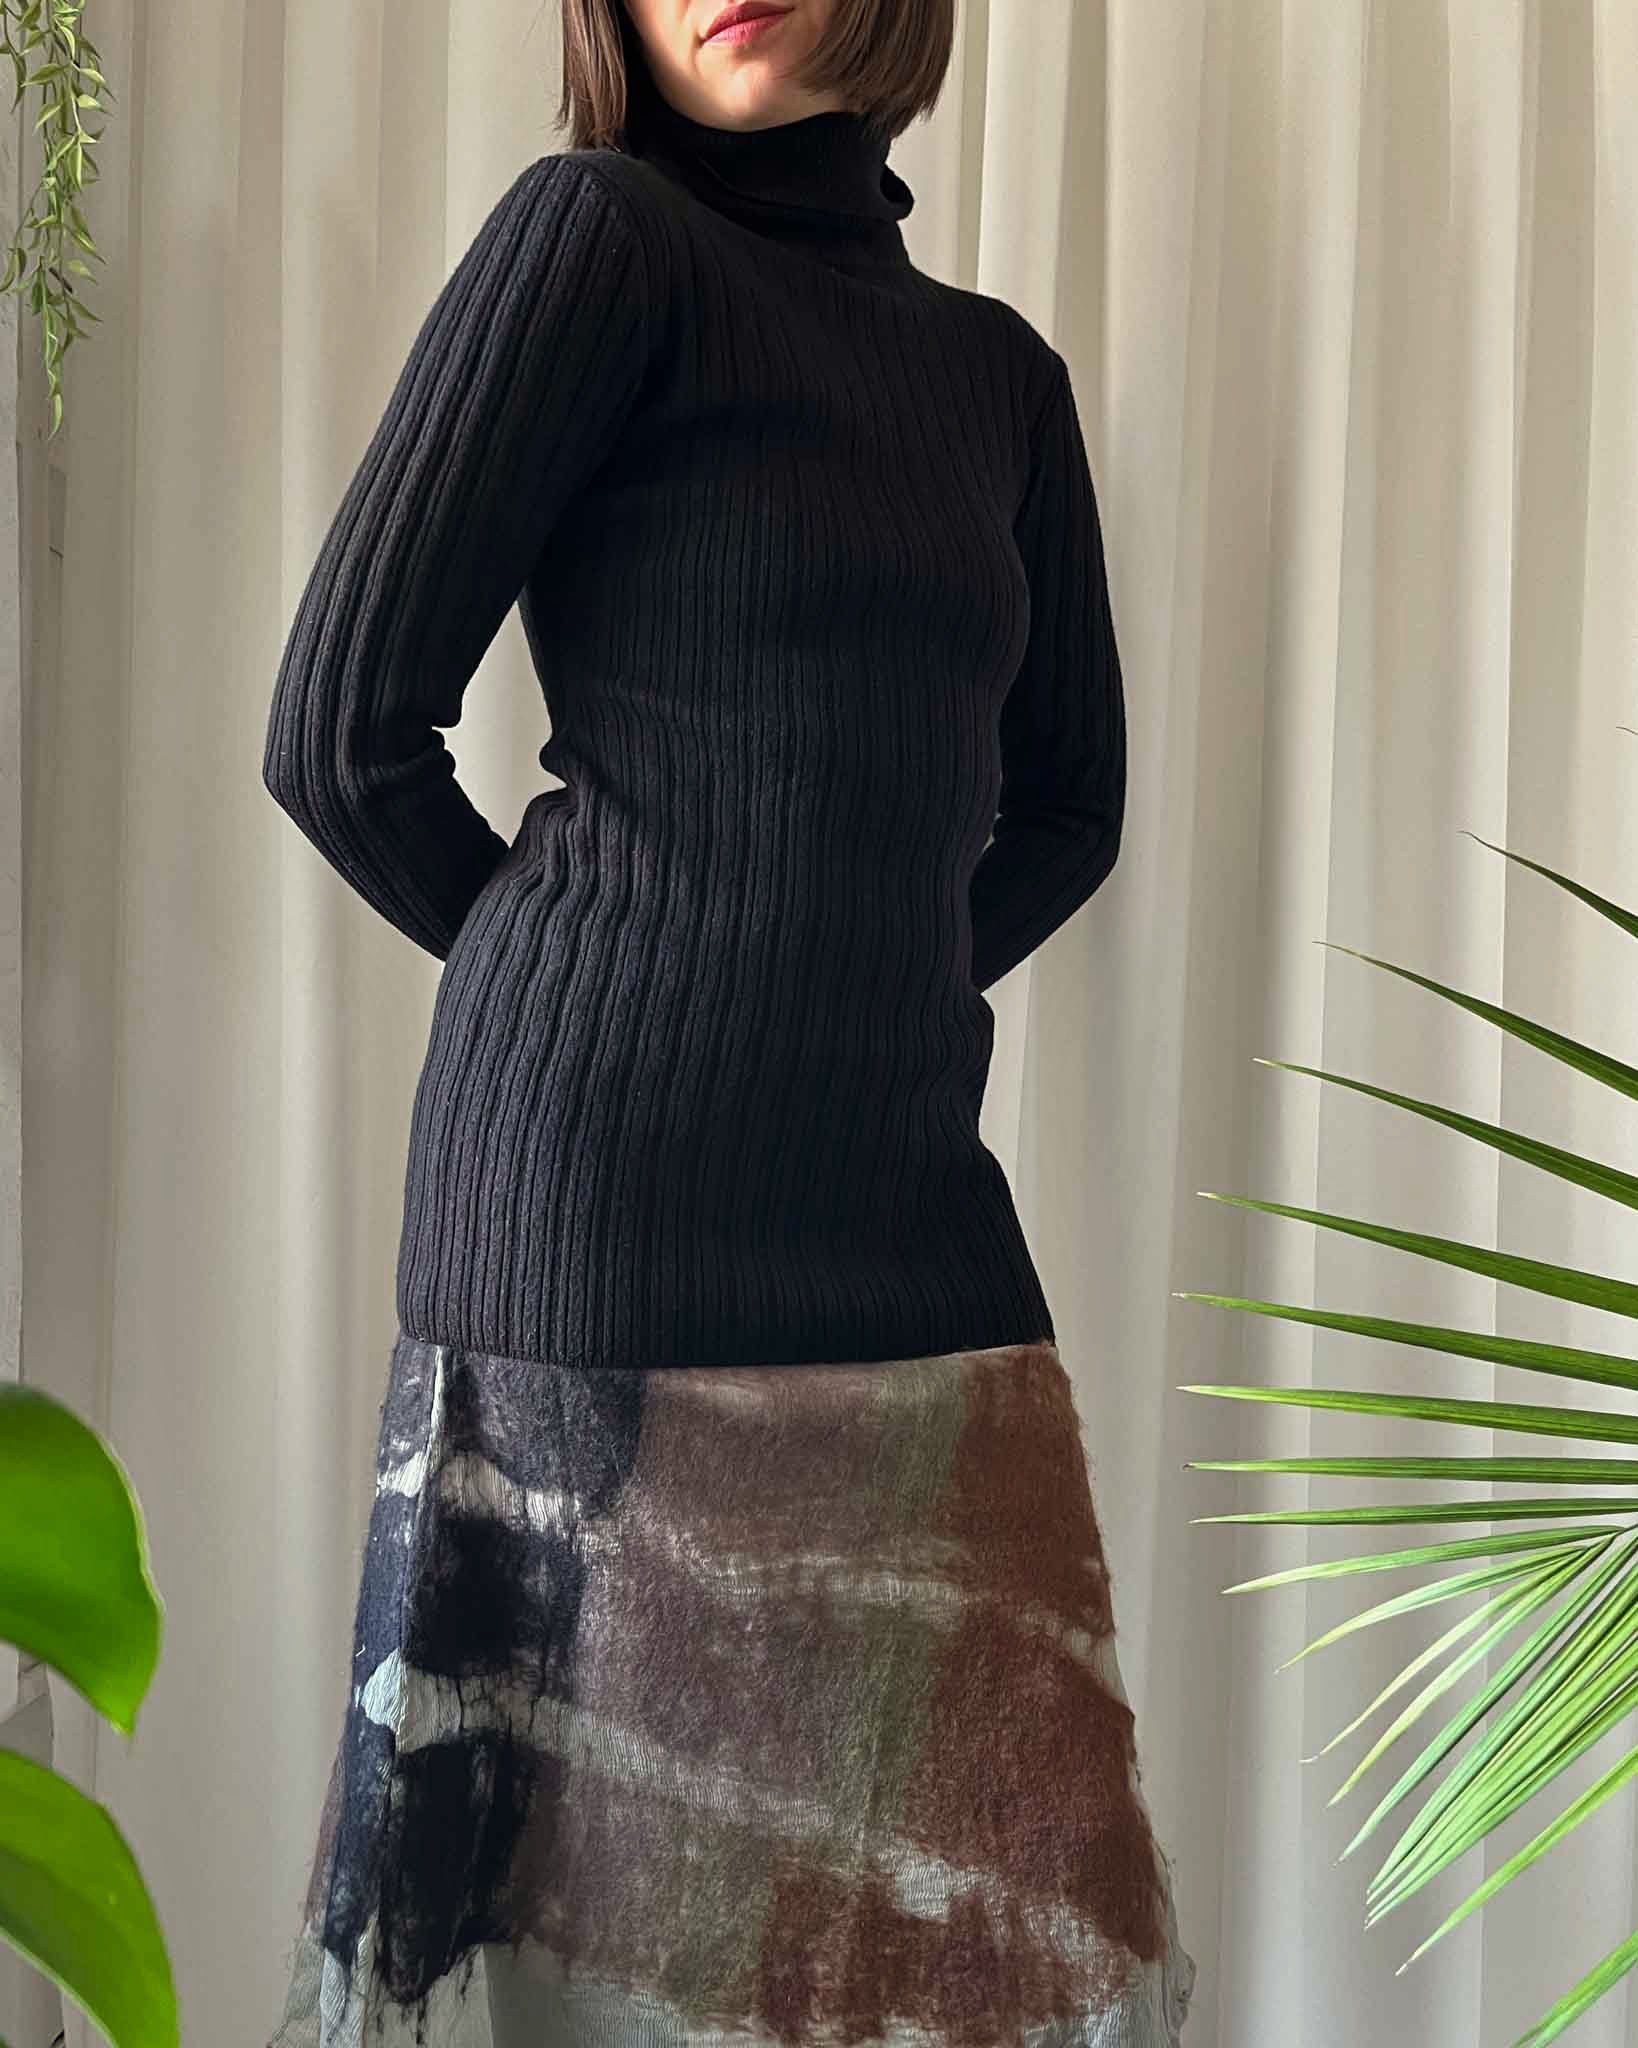 90s Versace Turtleneck Sweater